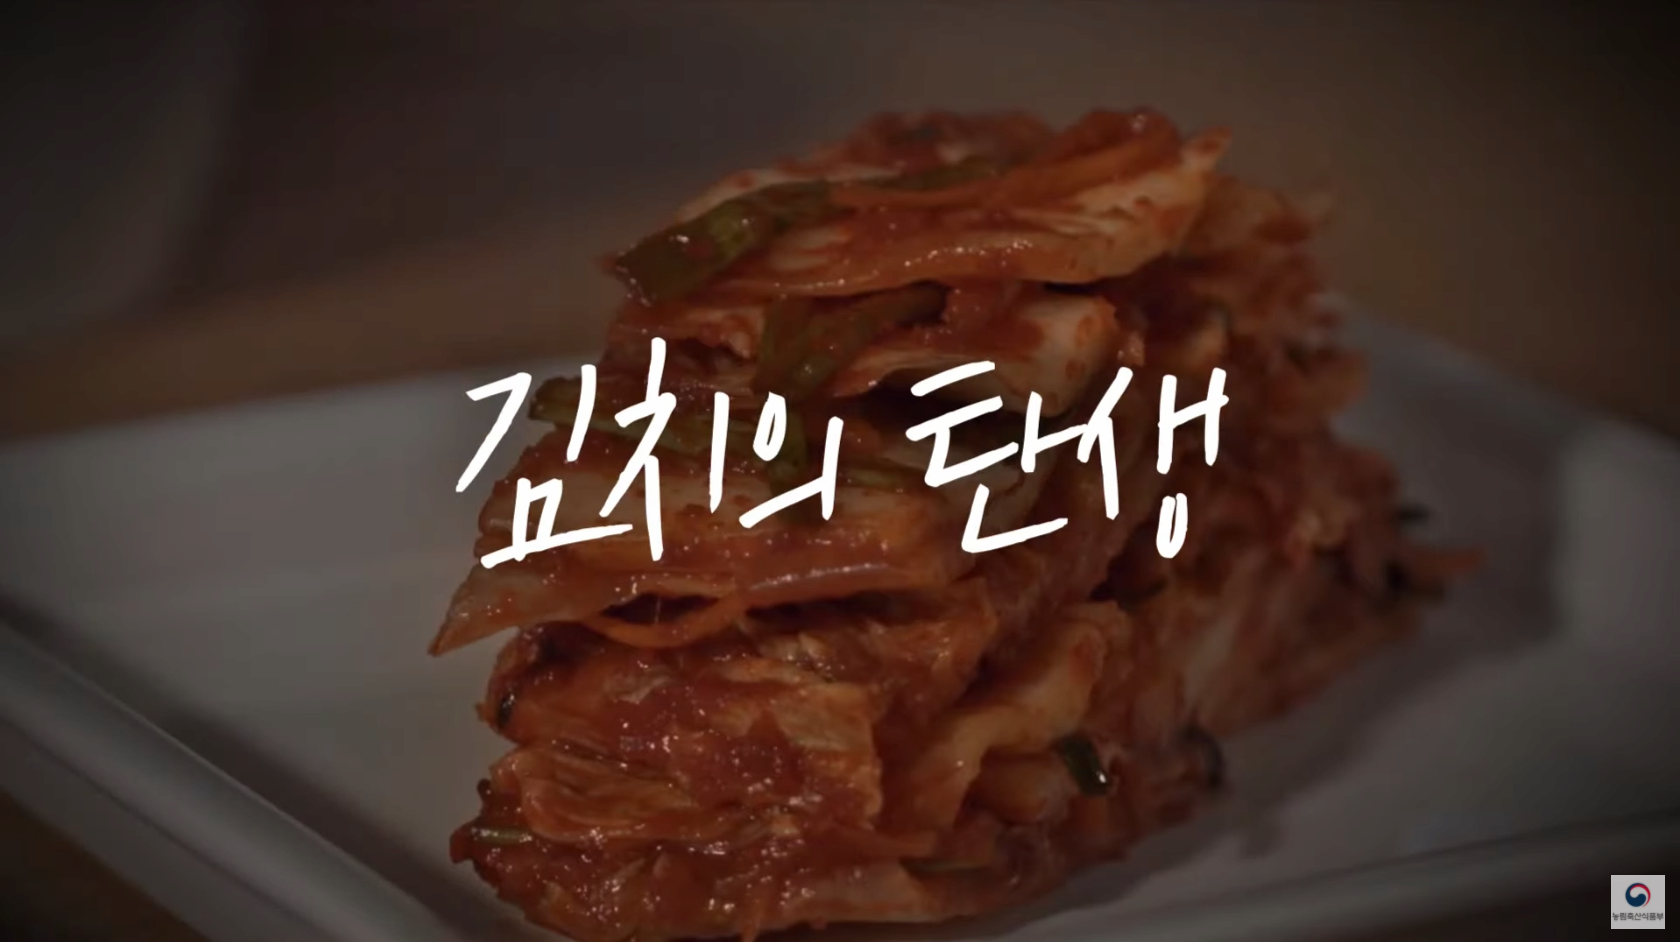 김치는 한국 전통음식입니다. 김치의 탄생 | K푸드의 진화 ep.1